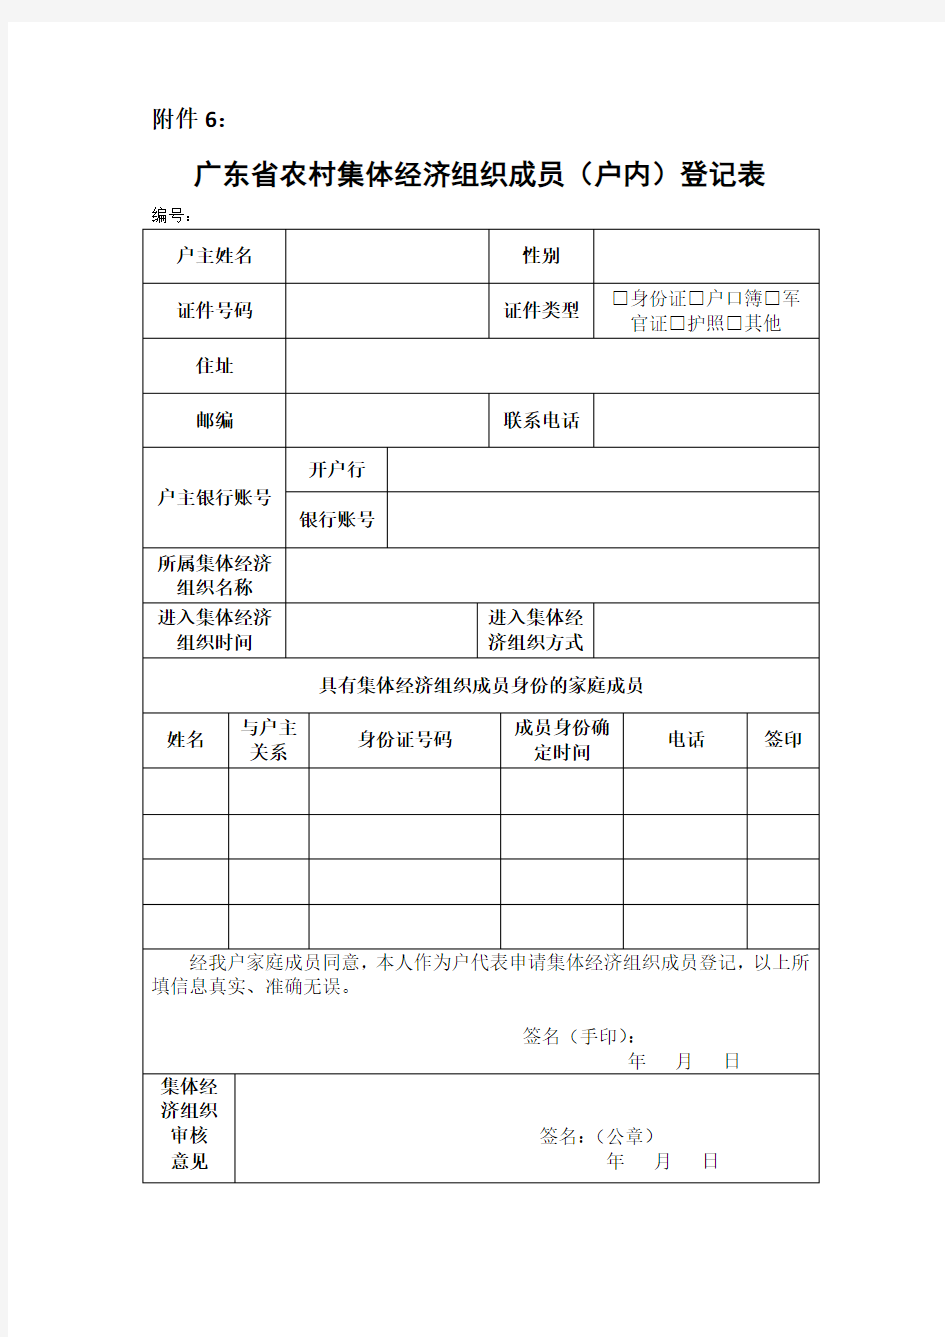 广东省农村集体经济组织成员(户内)登记表